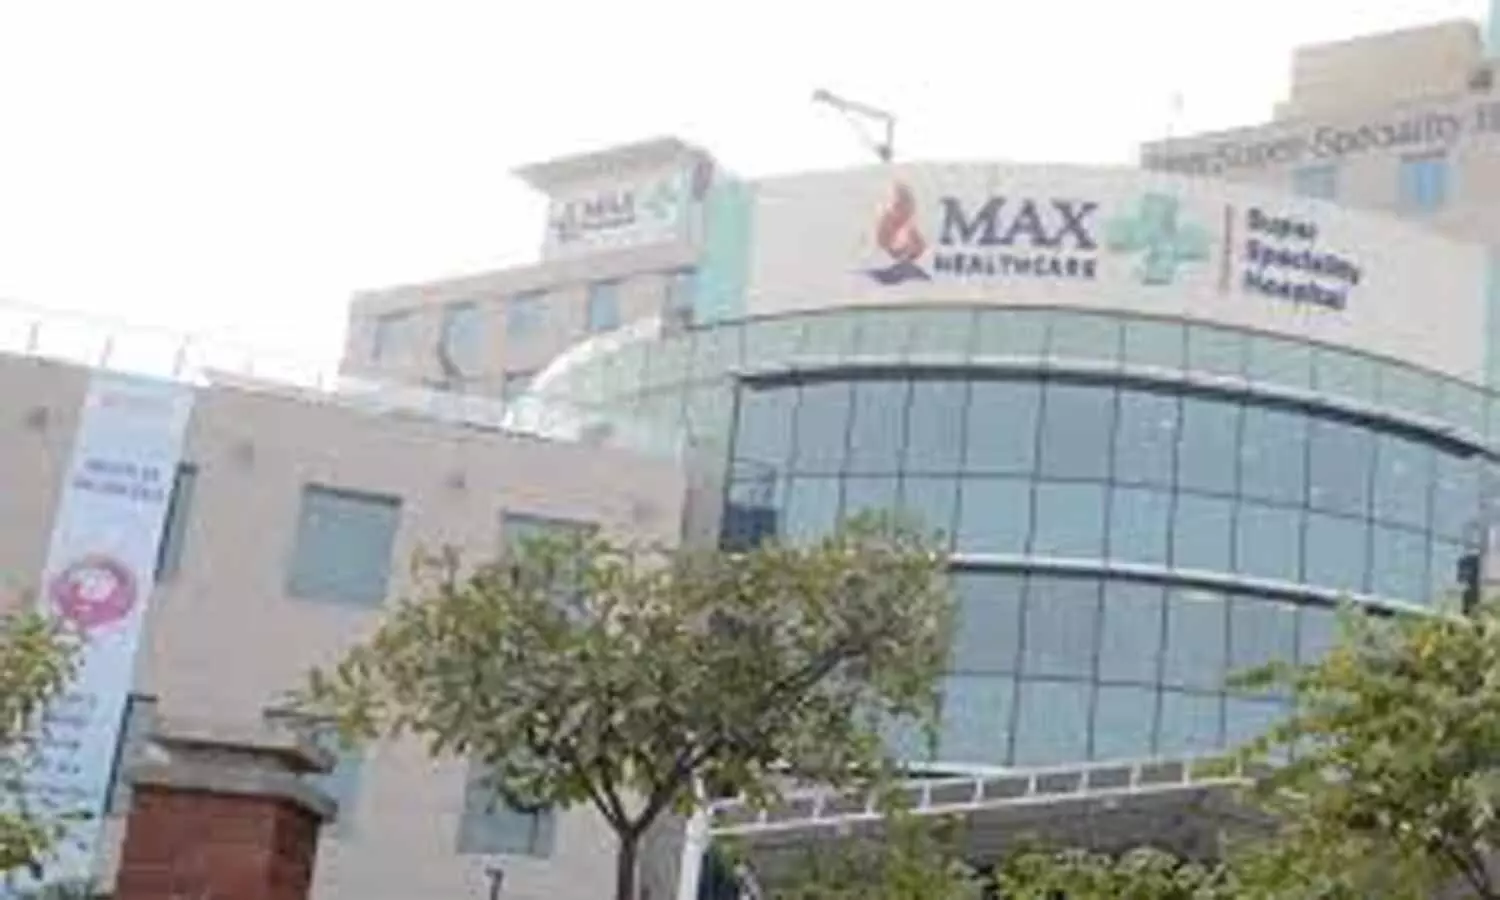 Delhi : Max Healthcare Institute to acquire Eqova Healthcare